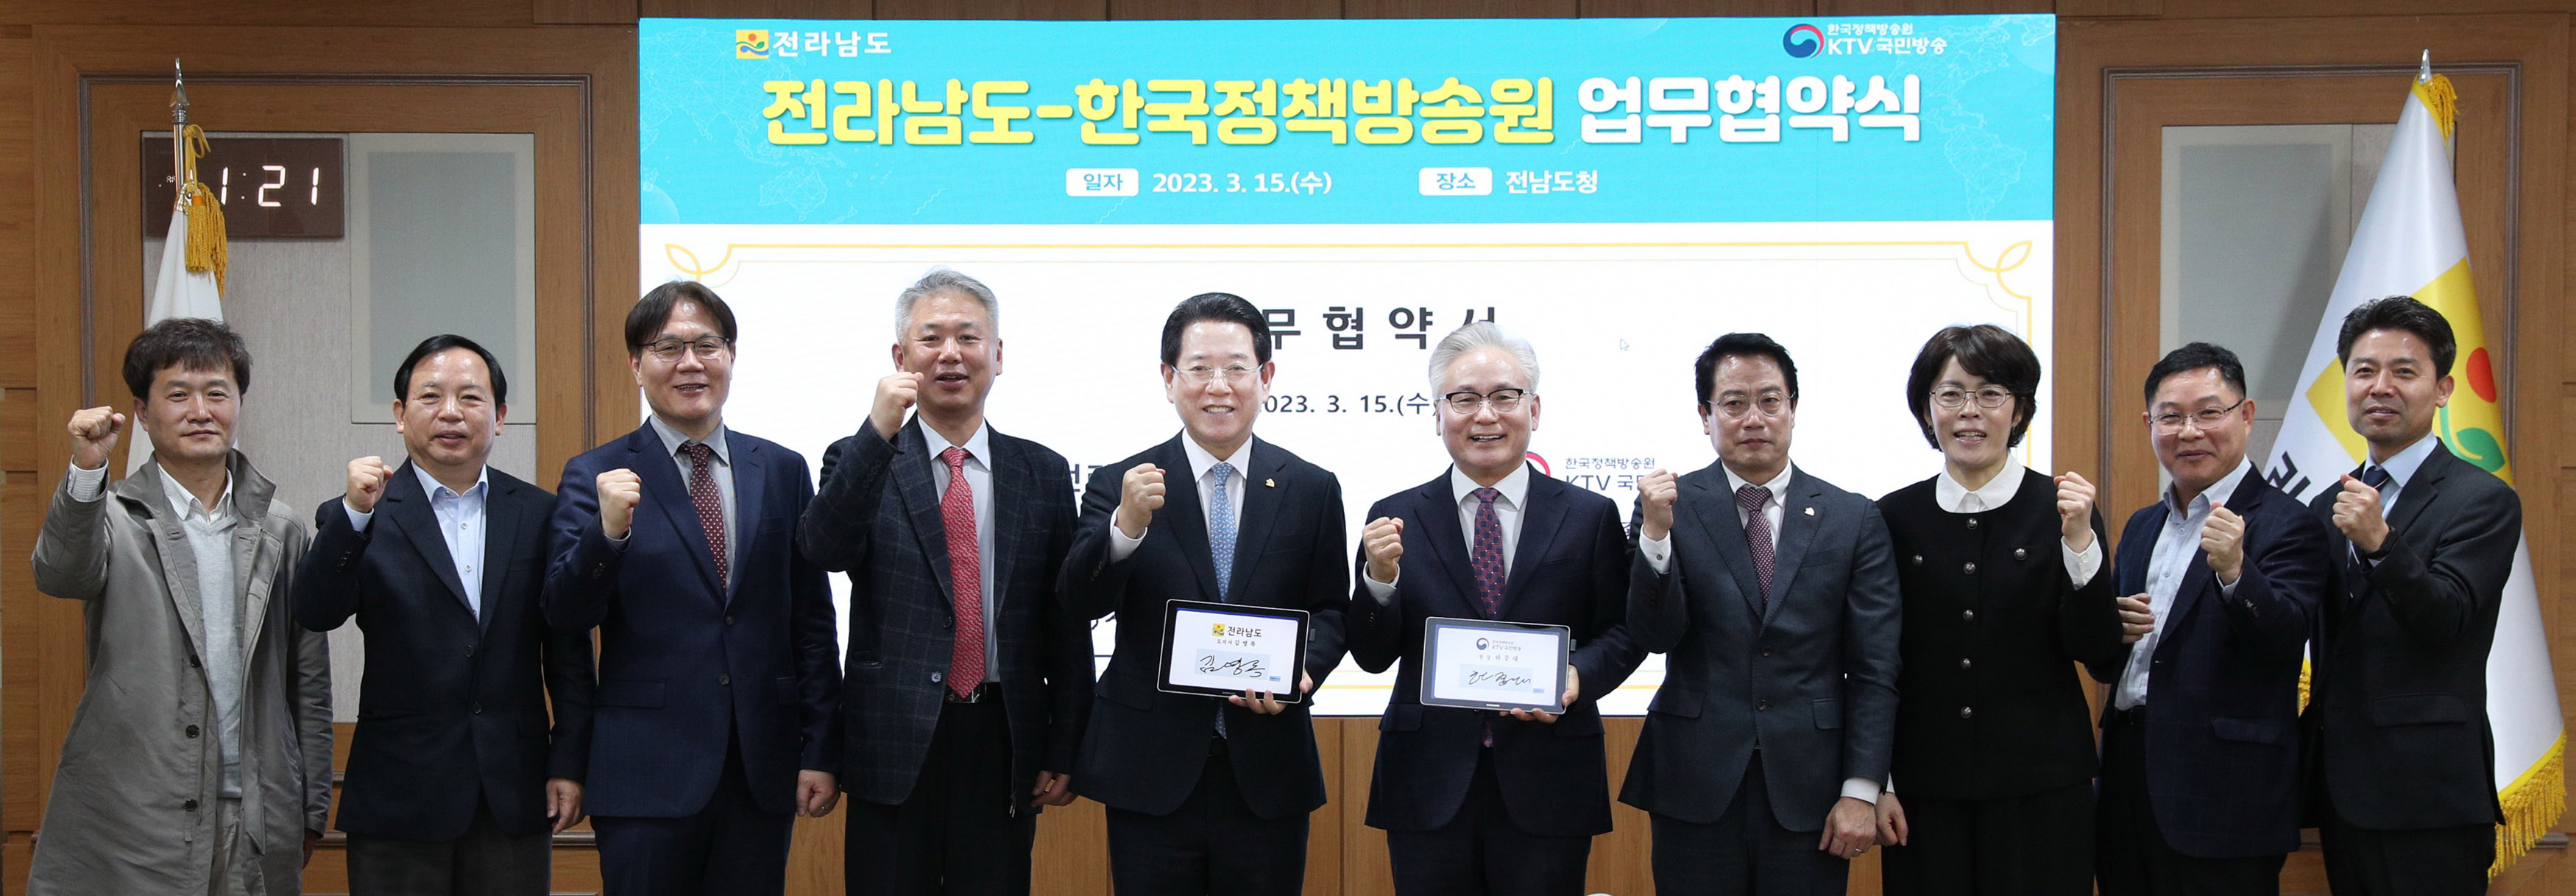 한국정책방송원과 홍보협력을 위한 업무협약4